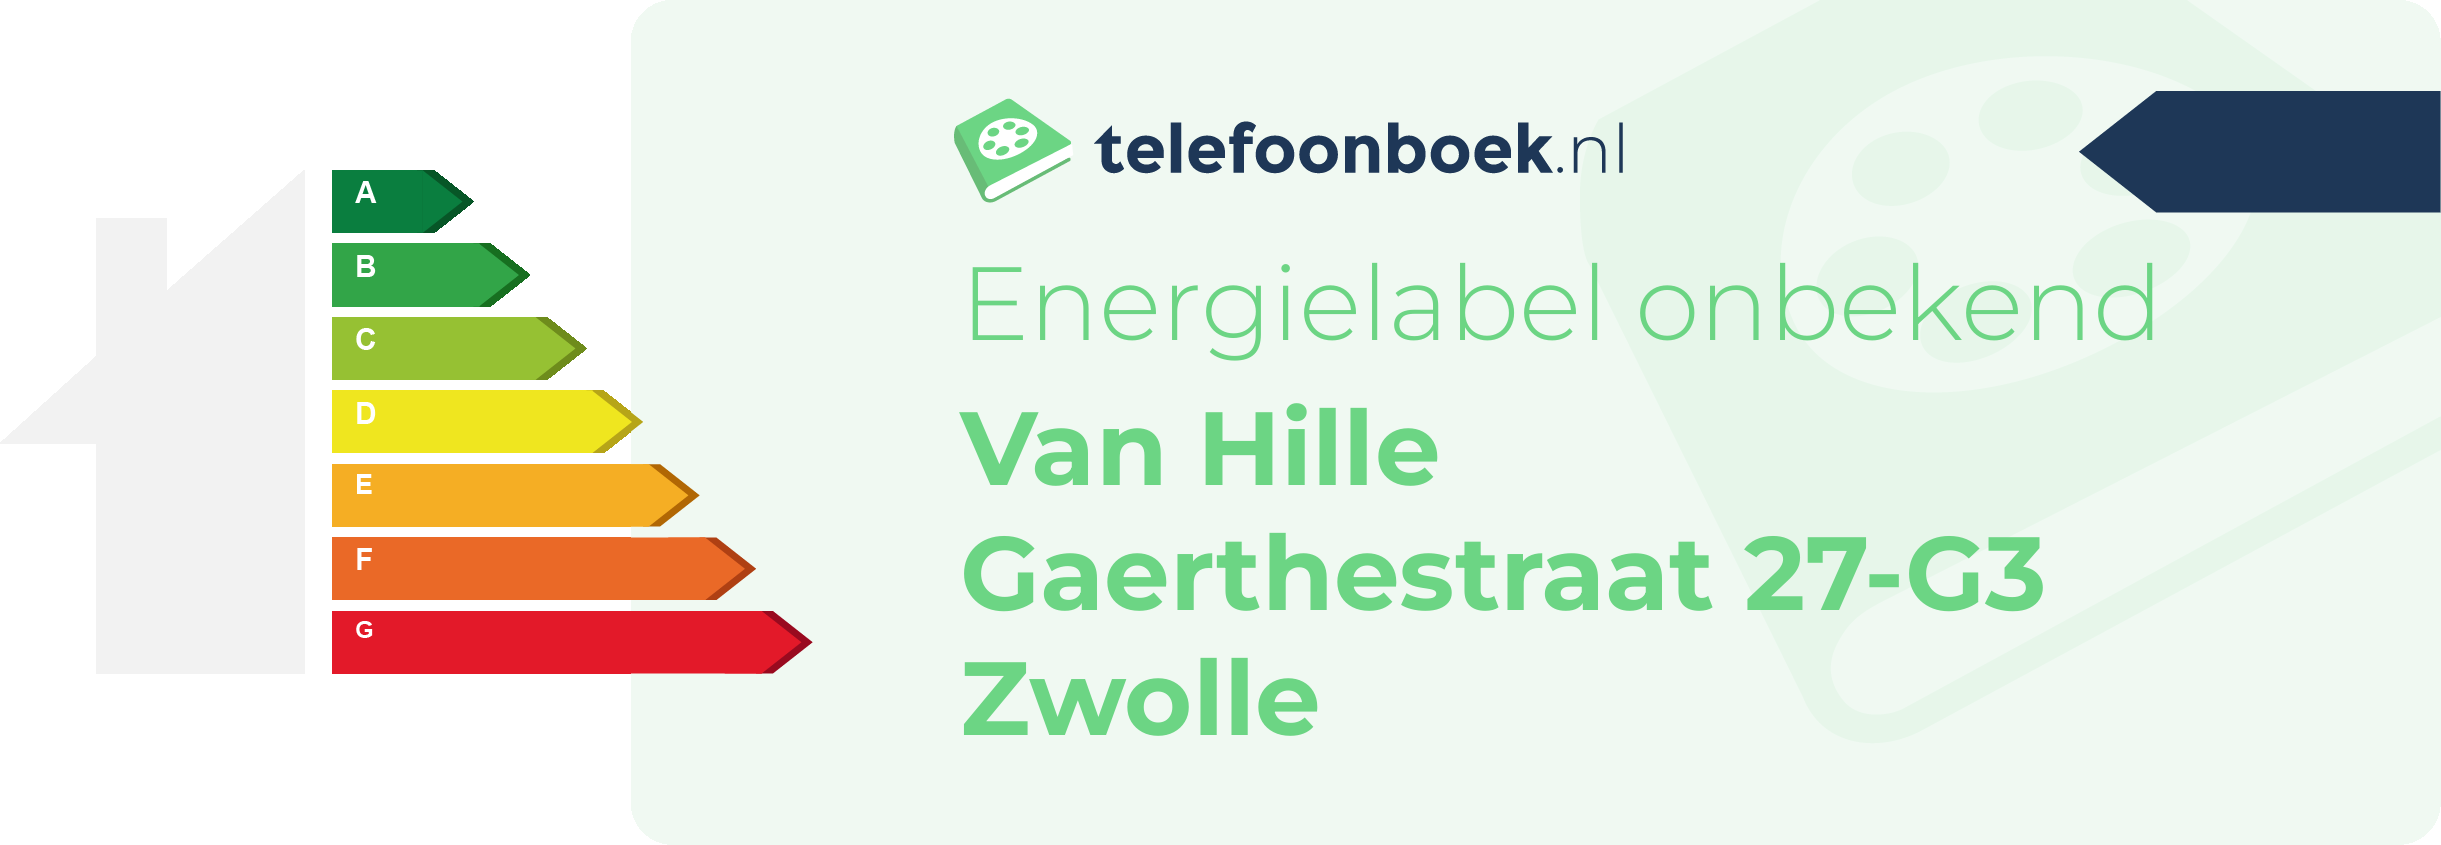 Energielabel Van Hille Gaerthestraat 27-G3 Zwolle